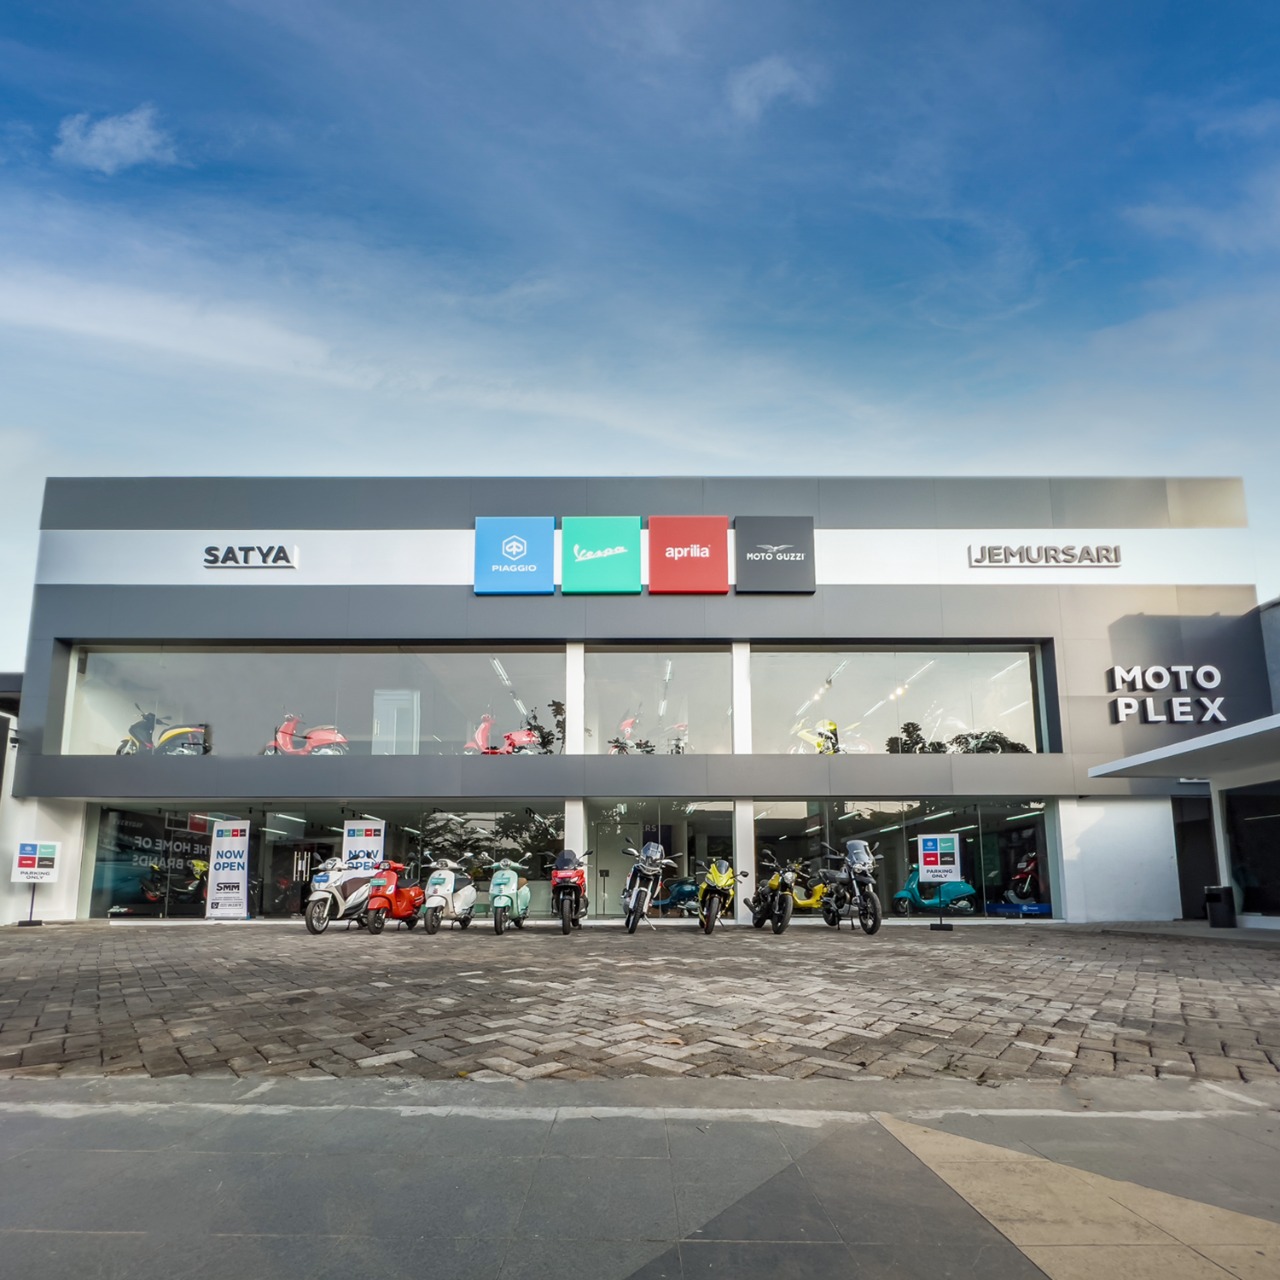 Piaggio Indonesia Buka Dealer Premium Motoplex Kedua di Surabaya